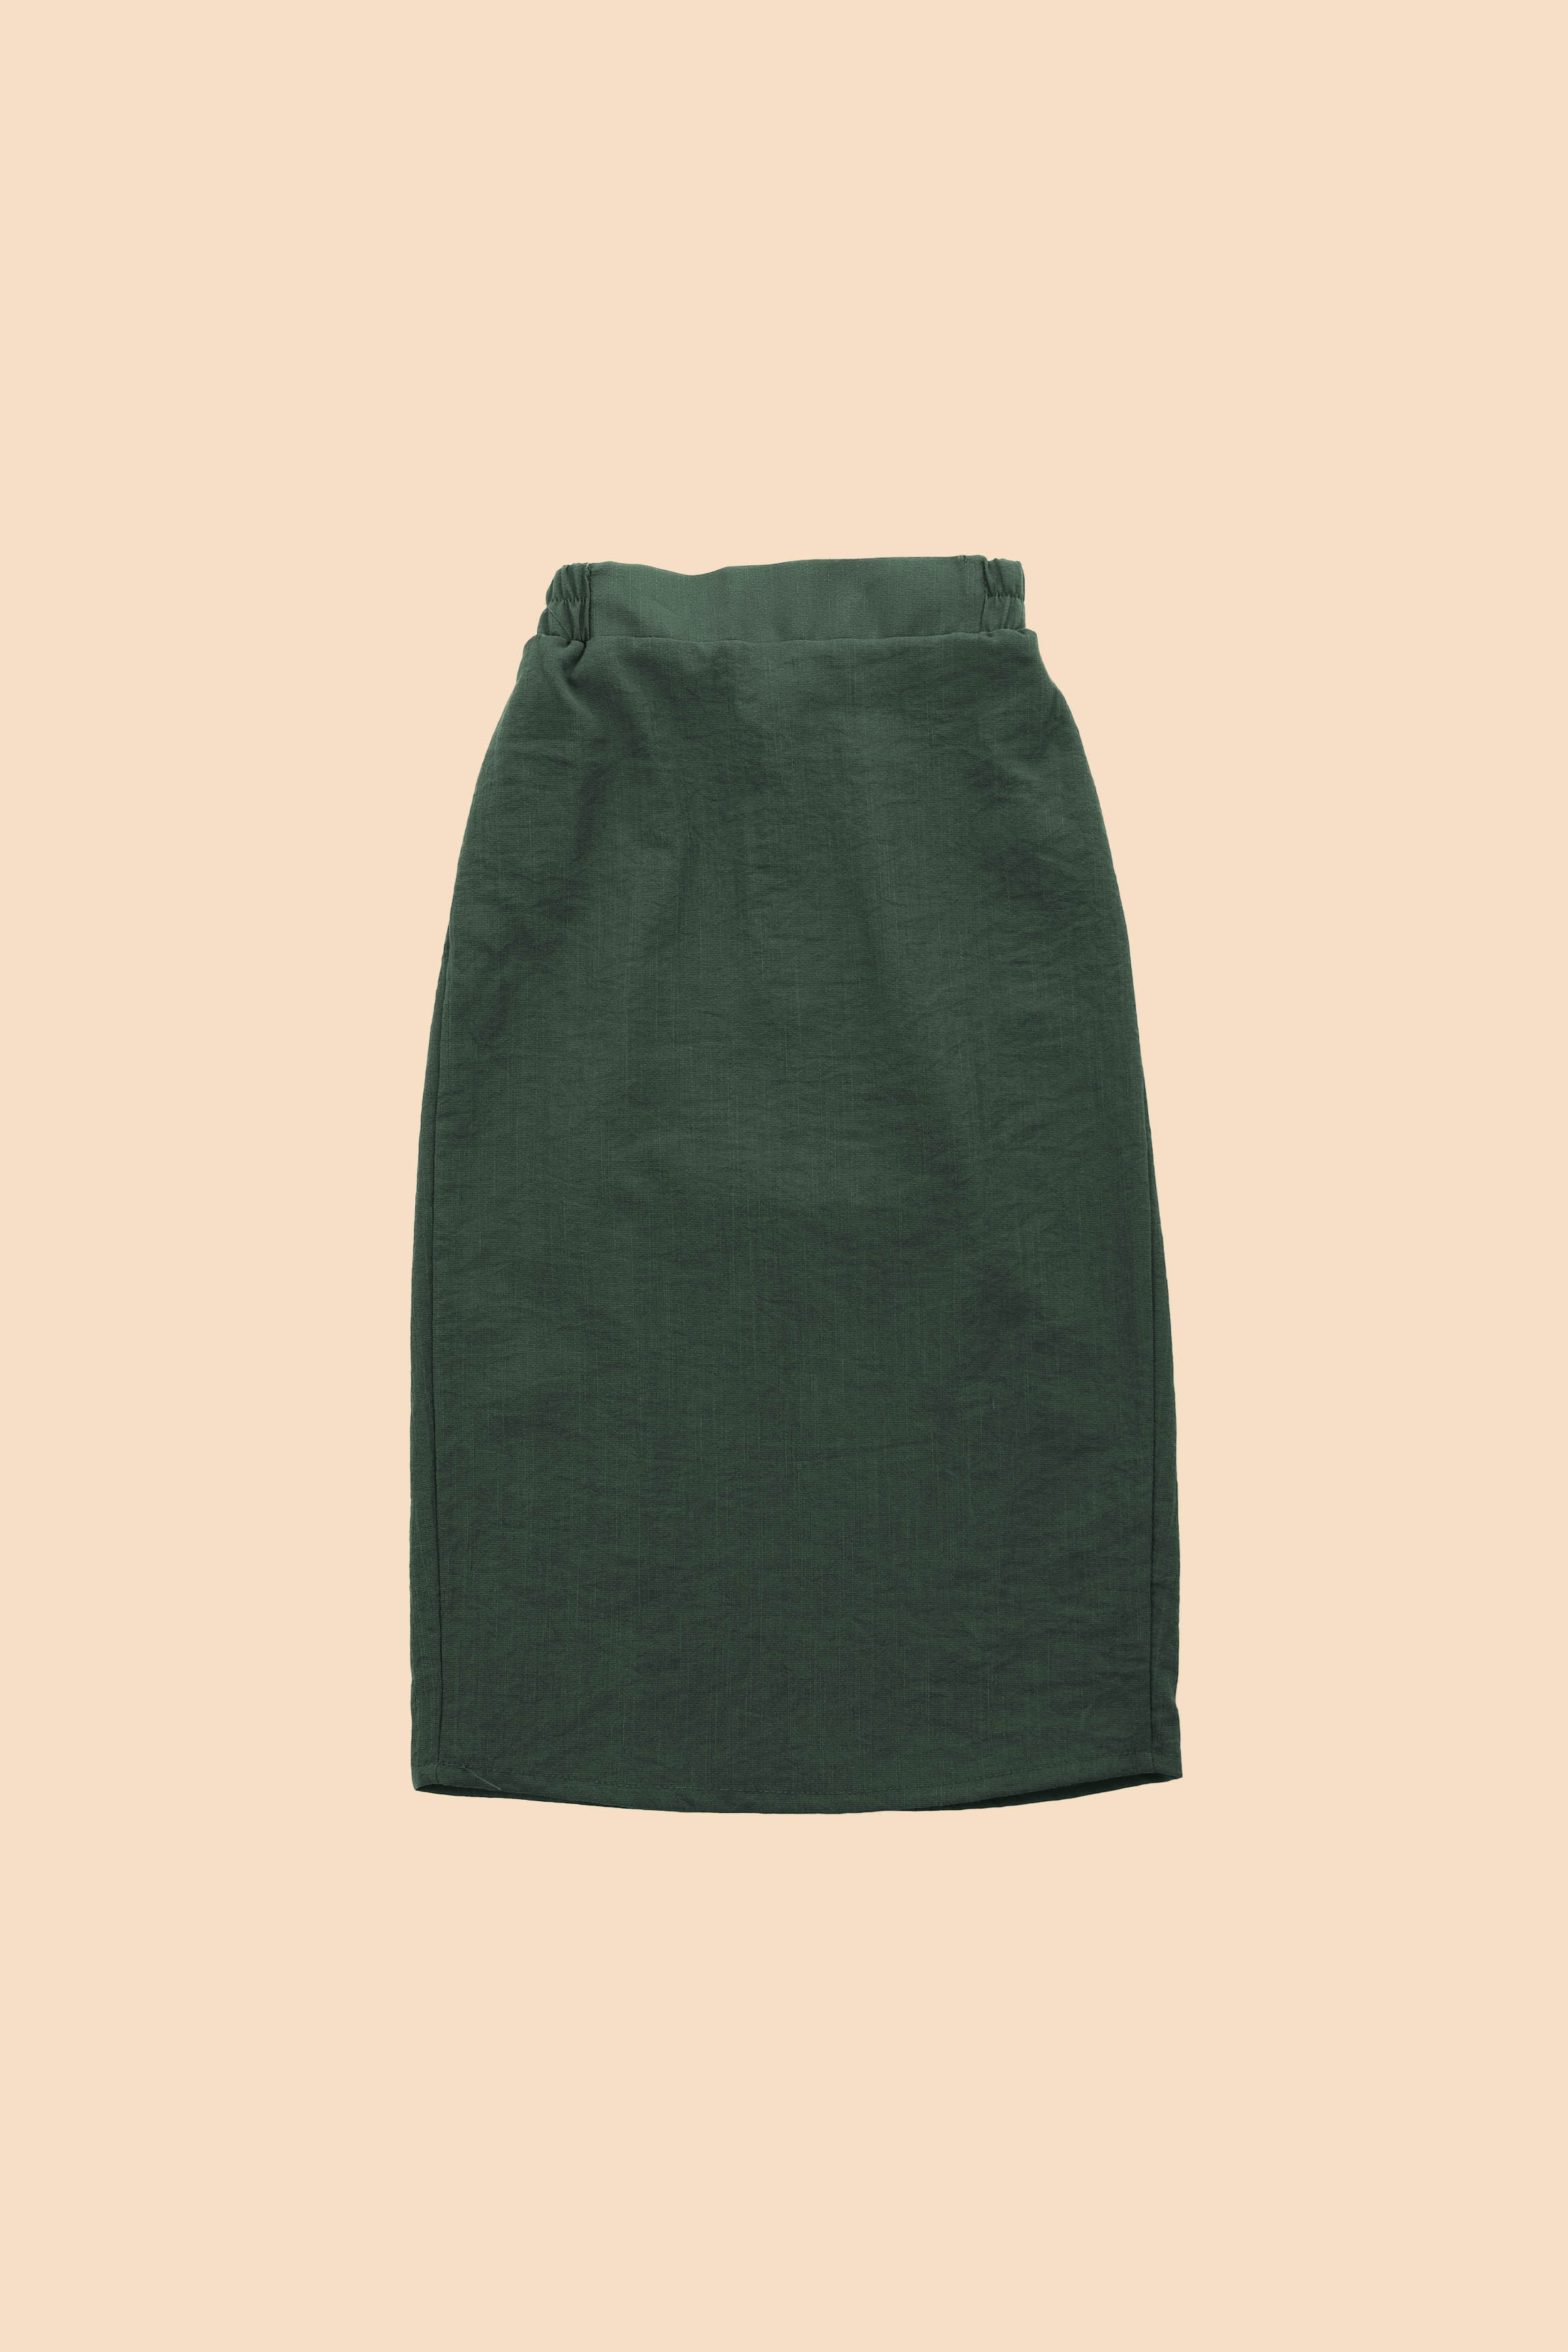 The Matahari Women Basic Skirt Emerald